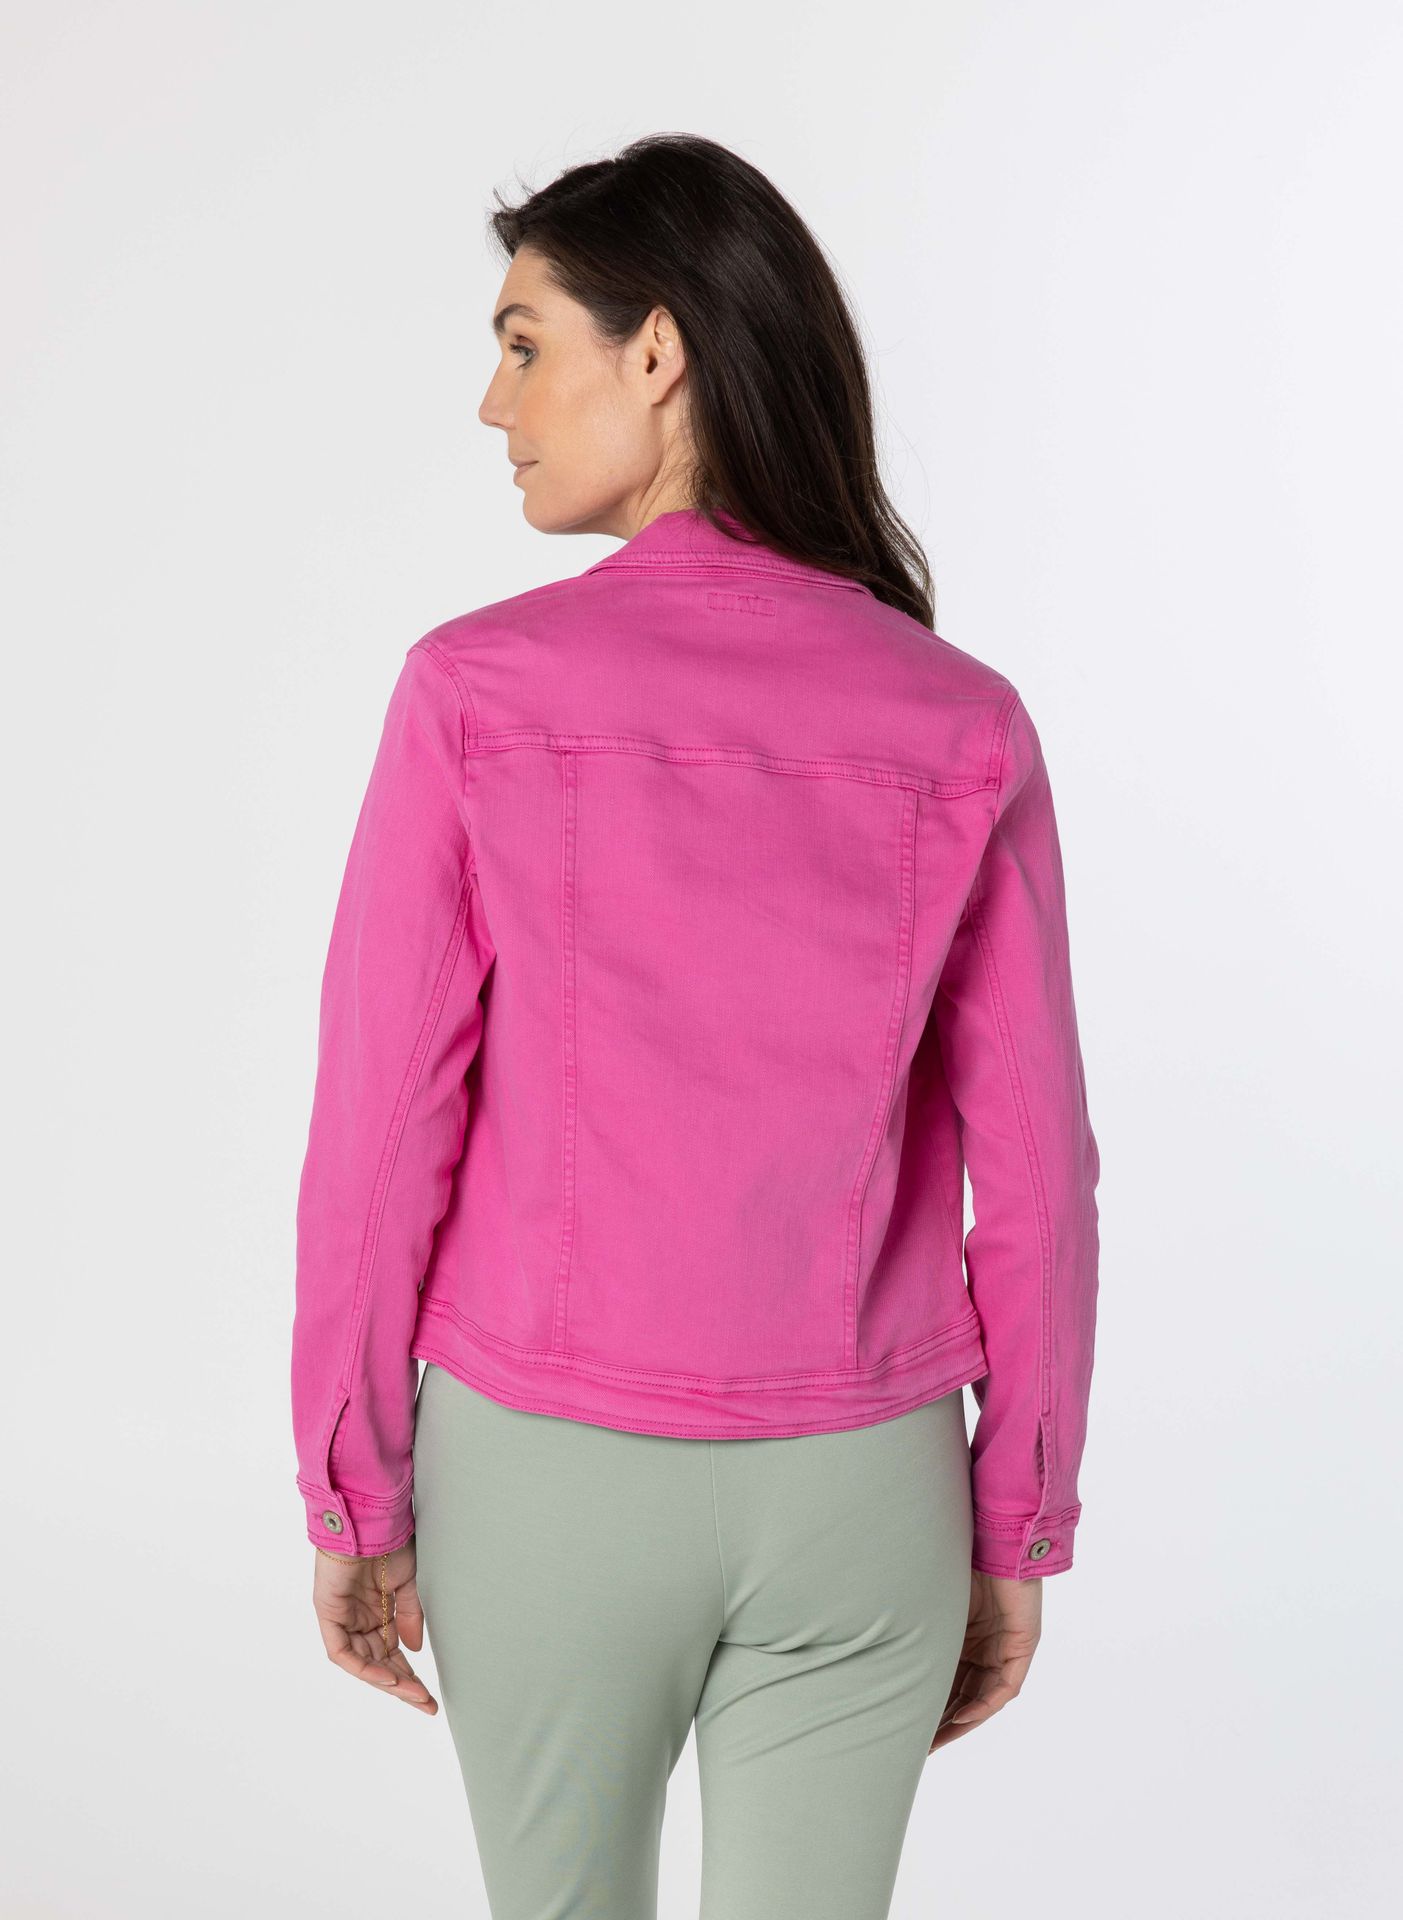 Norah Roze spijkerjacket van katoenmix pink 212557-900